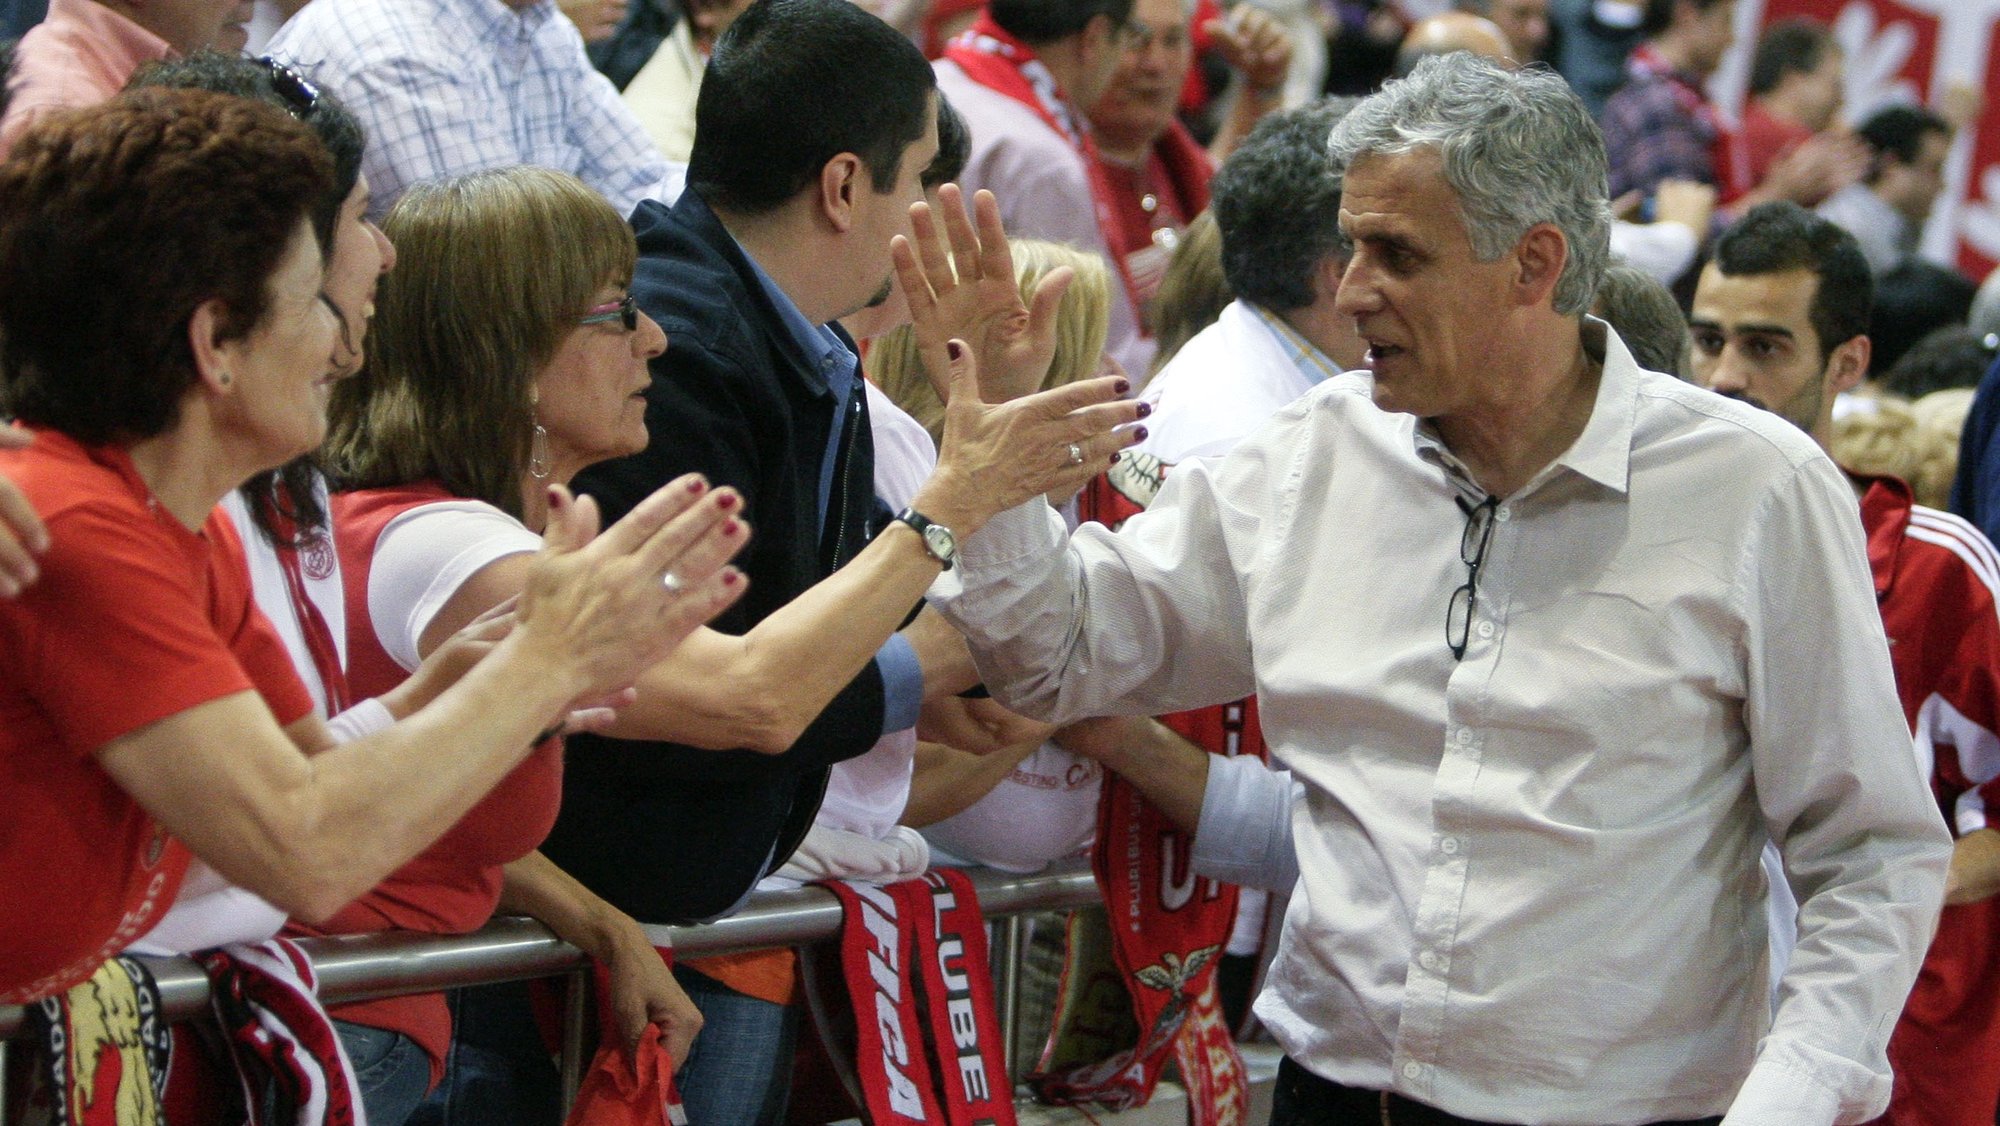 Henrique Vieira, treinador  da equipa encarnada, saúda os adeptos no final do jogo  Benfica vs Académica, para apurar o último finalista da Liga, 27 de Maio de 2009, no pavilhão da Luz. O Benfica venceu por 83 - 69. ANTÓNIO COTRIM/LUSA